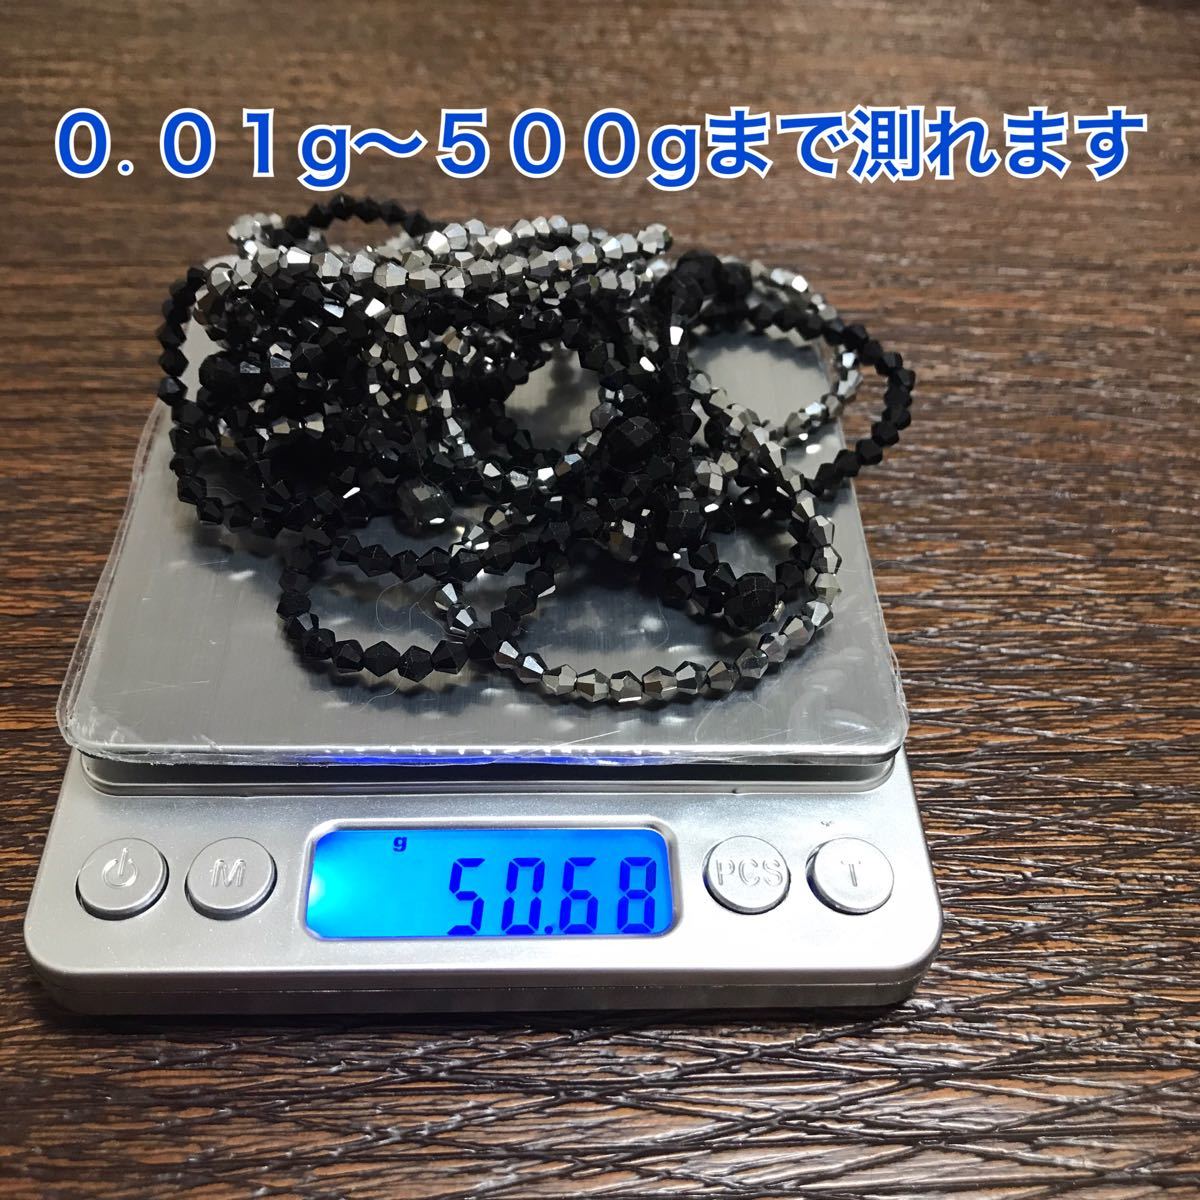 デジタルキッチンスケール 0.０1g〜500g対応　電子秤